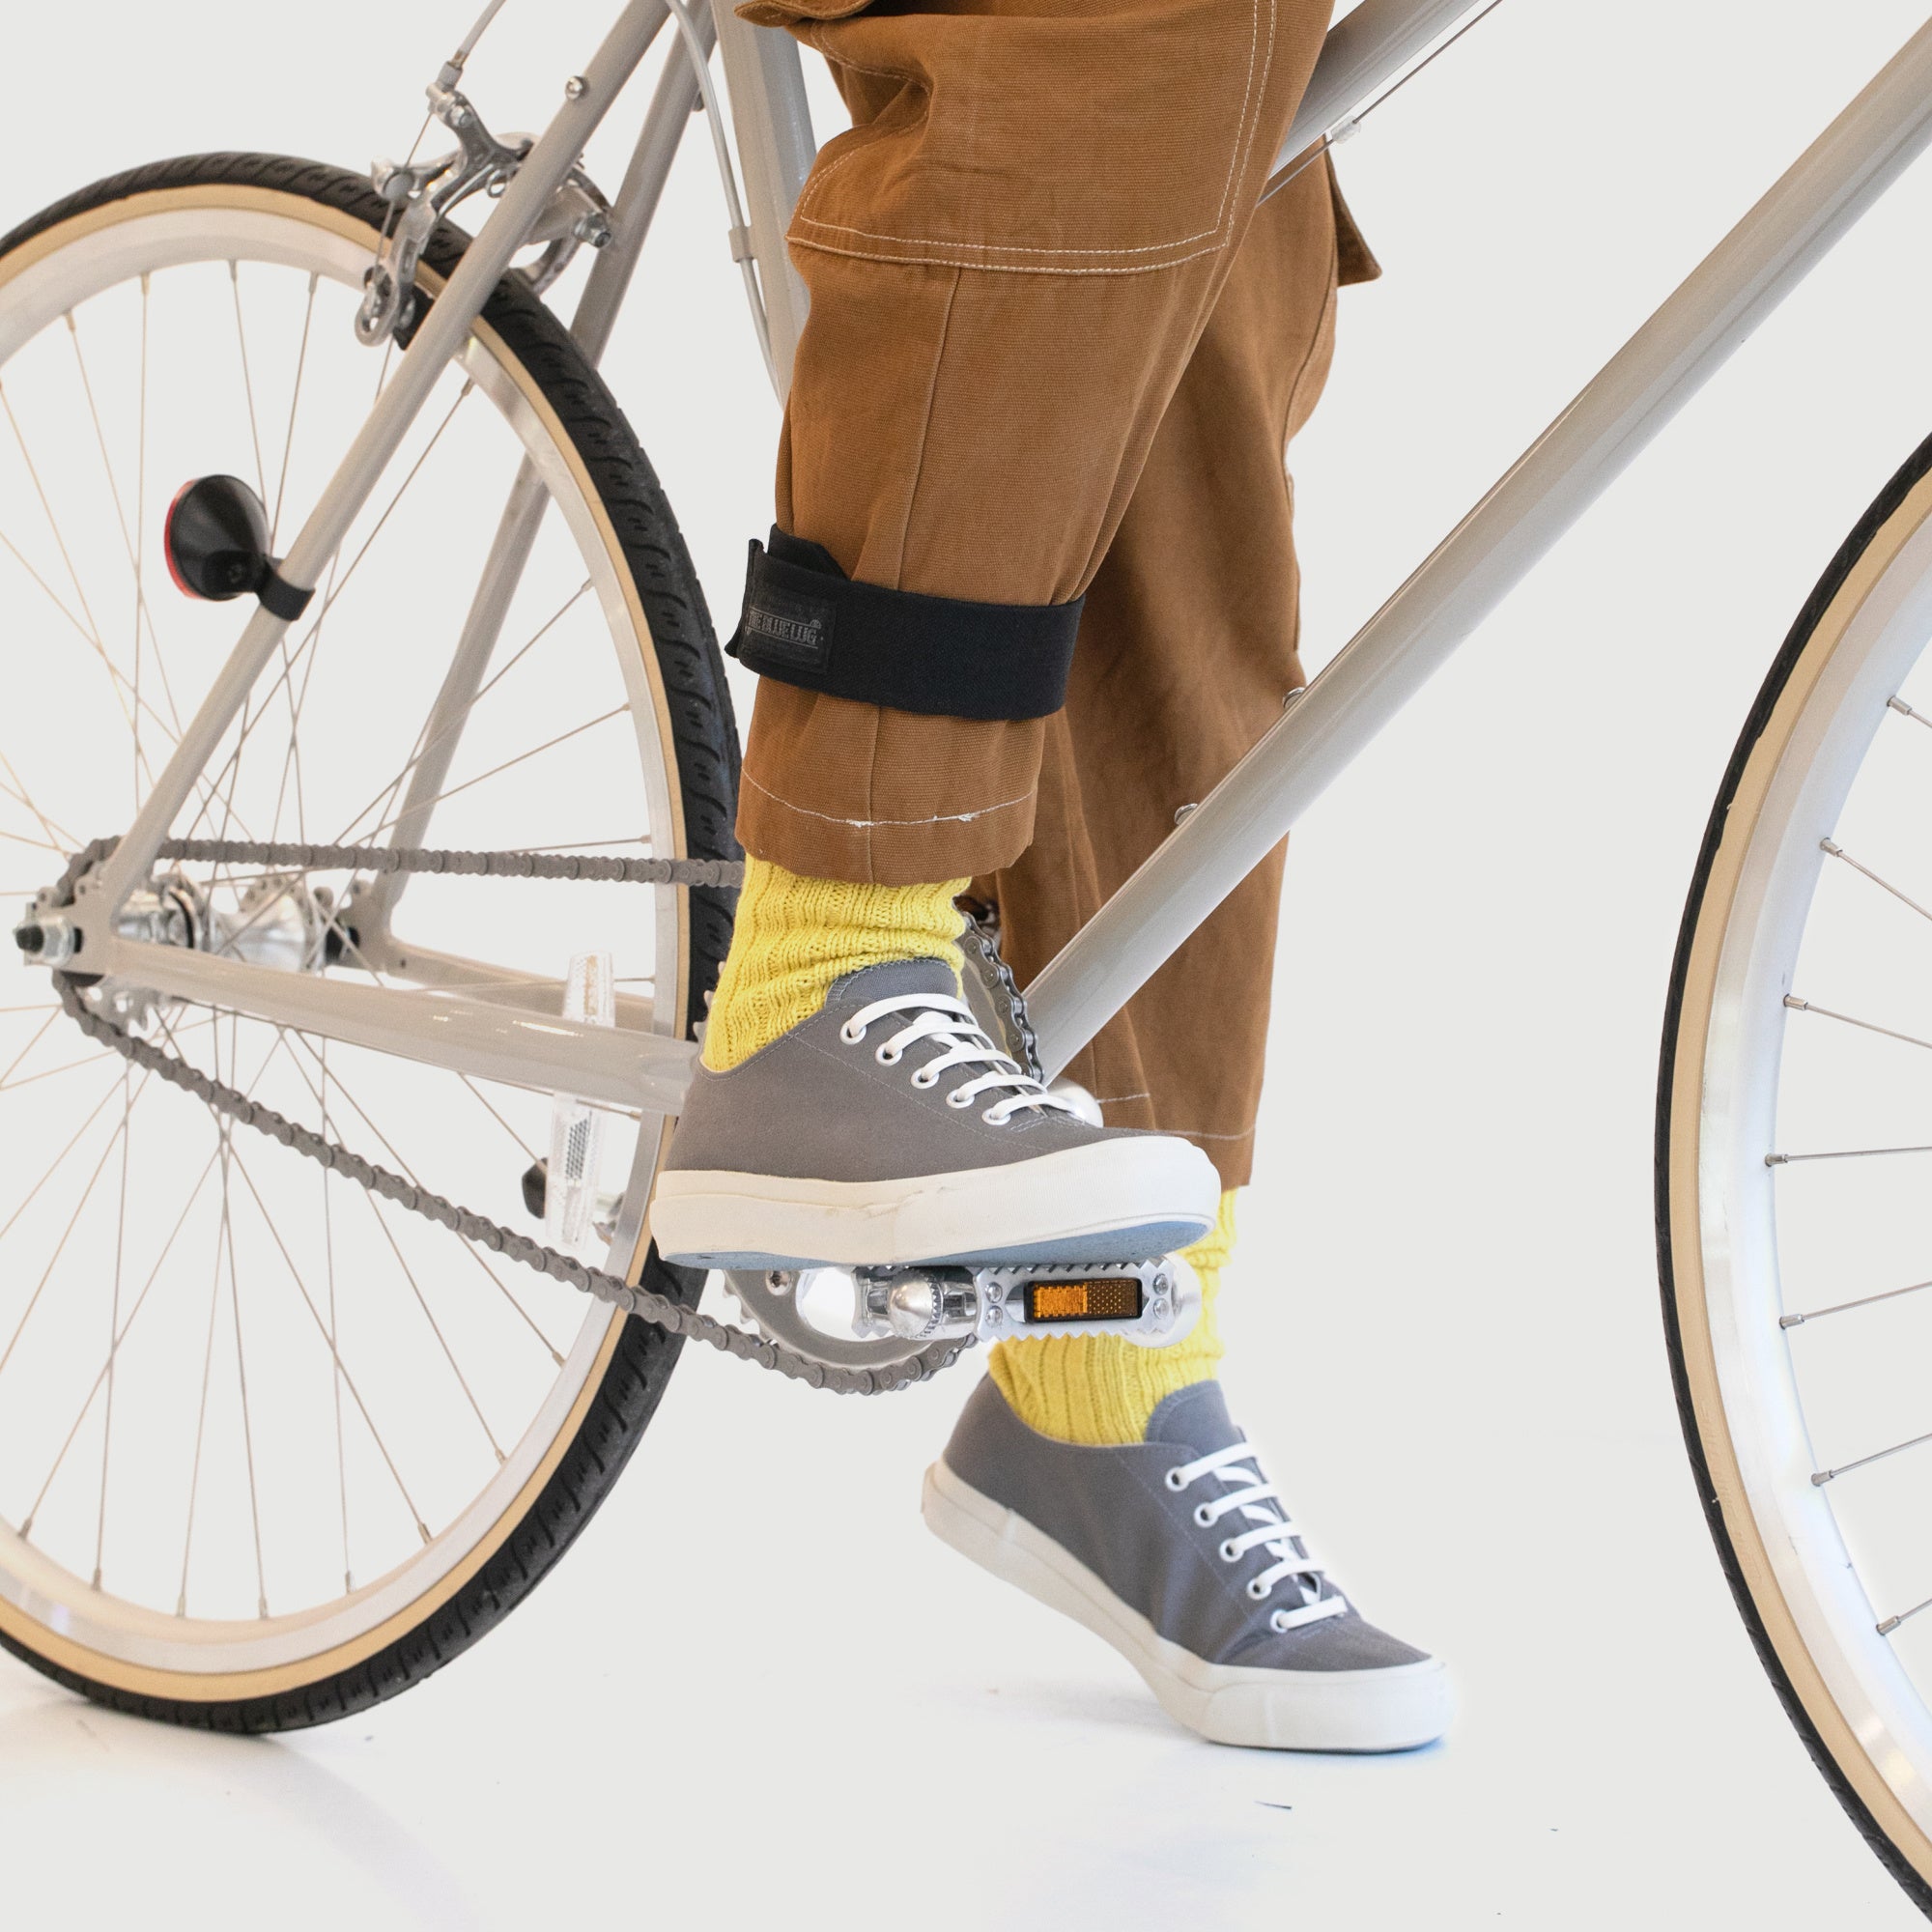 Wholesale Max Limit Reflective Bike Trouser Clips | Pound Wholesale